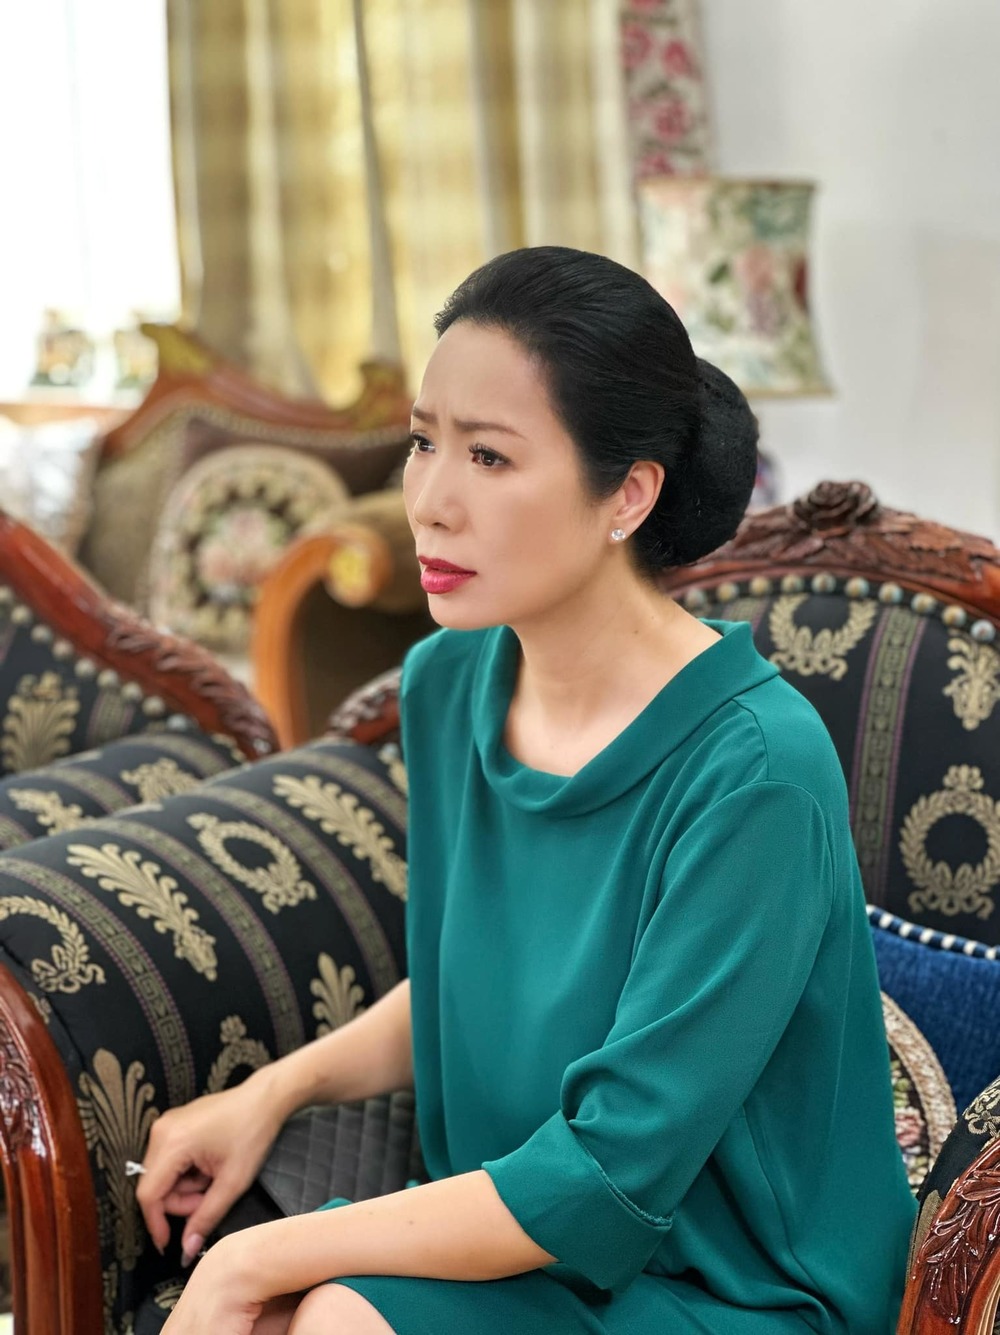 Con của cố NS Thiên Kim bị trách không thương mẹ, Trịnh Kim Chi lên tiếng bênh vực - ảnh 4